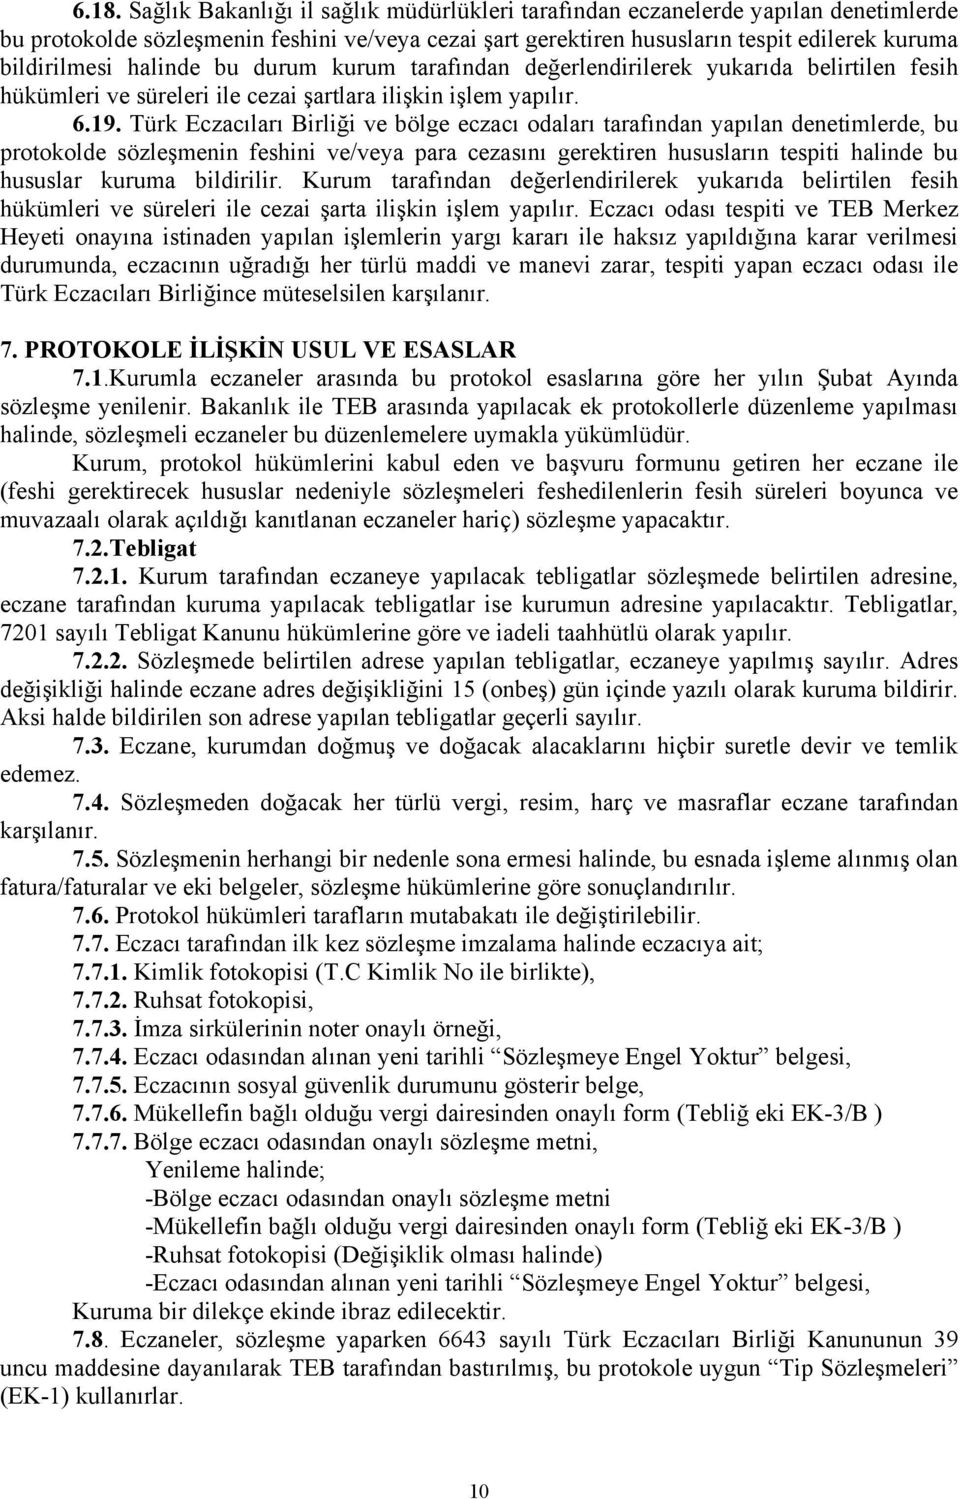 Türk Eczacıları Birliği ve bölge eczacı odaları tarafından yapılan denetimlerde, bu protokolde sözleşmenin feshini ve/veya para cezasını gerektiren hususların tespiti halinde bu hususlar kuruma